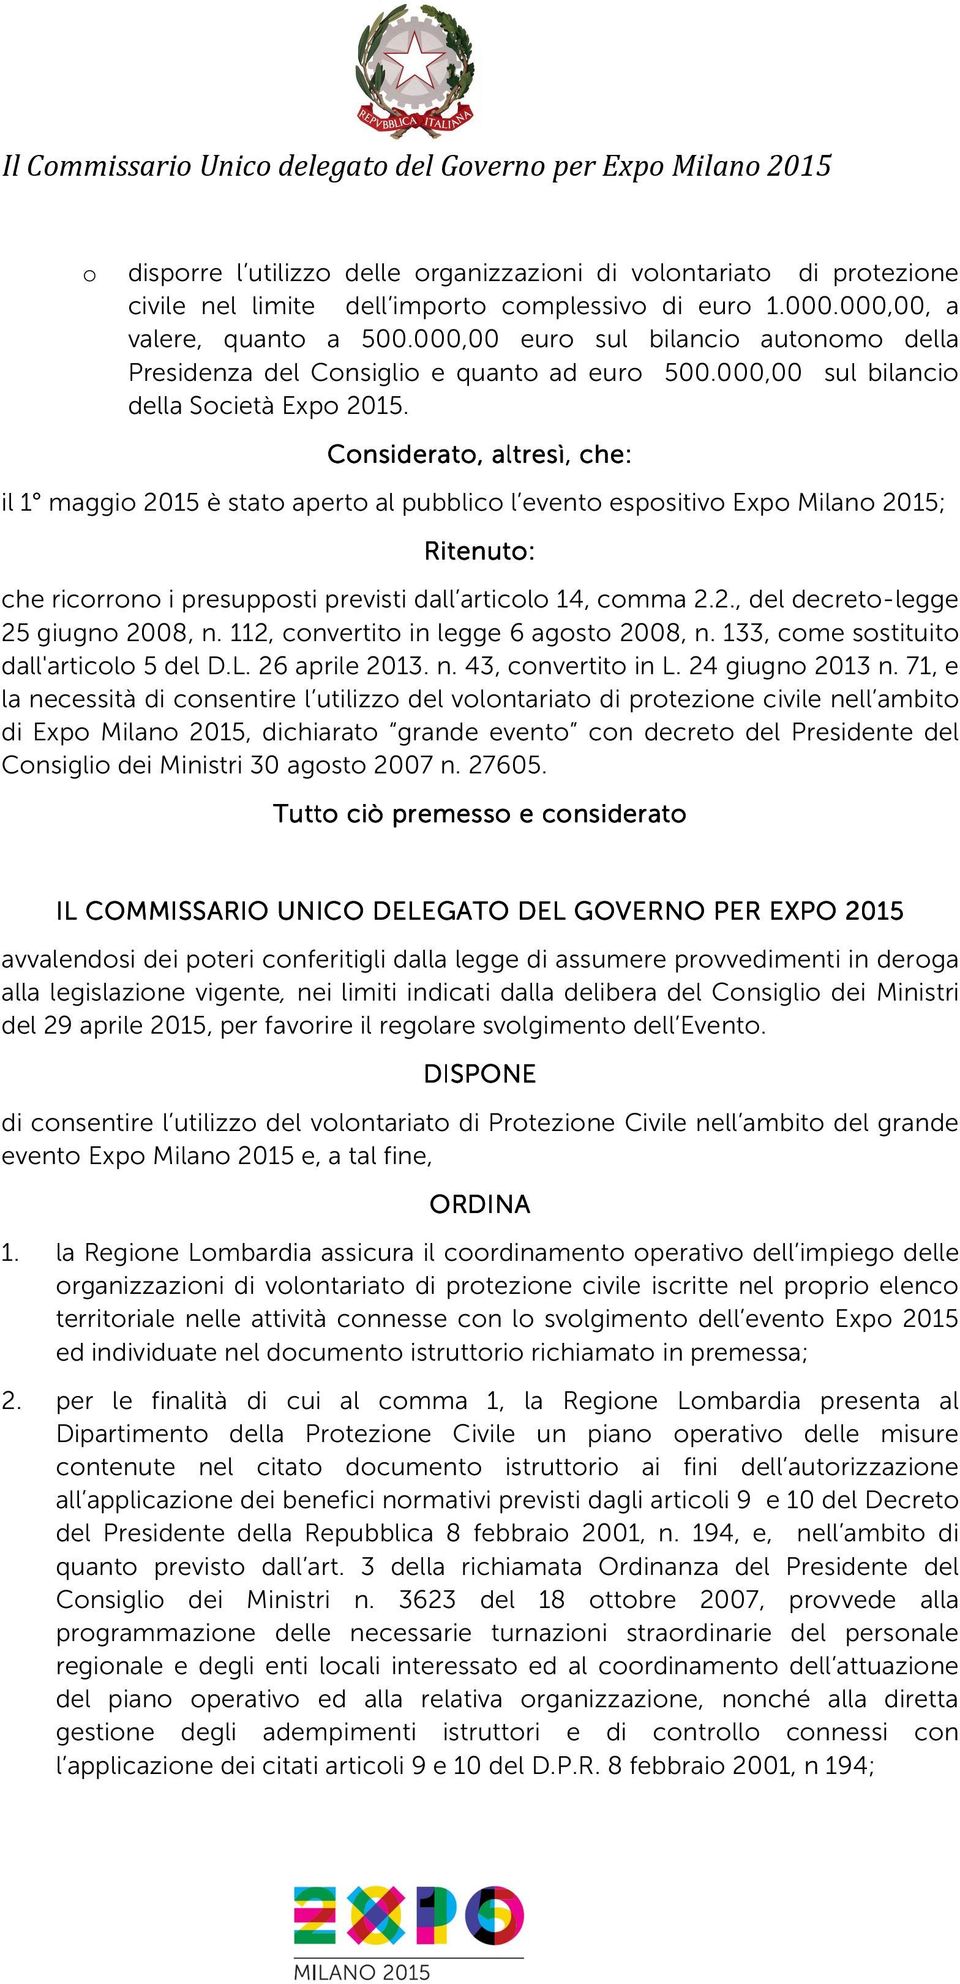 Cnsiderat, altresì, che: il 1 maggi 2015 è stat apert al pubblic l event espsitiv Exp Milan 2015; Ritenut: che ricrrn i presuppsti previsti dall articl 14, cmma 2.2., del decret-legge 25 giugn 2008, n.